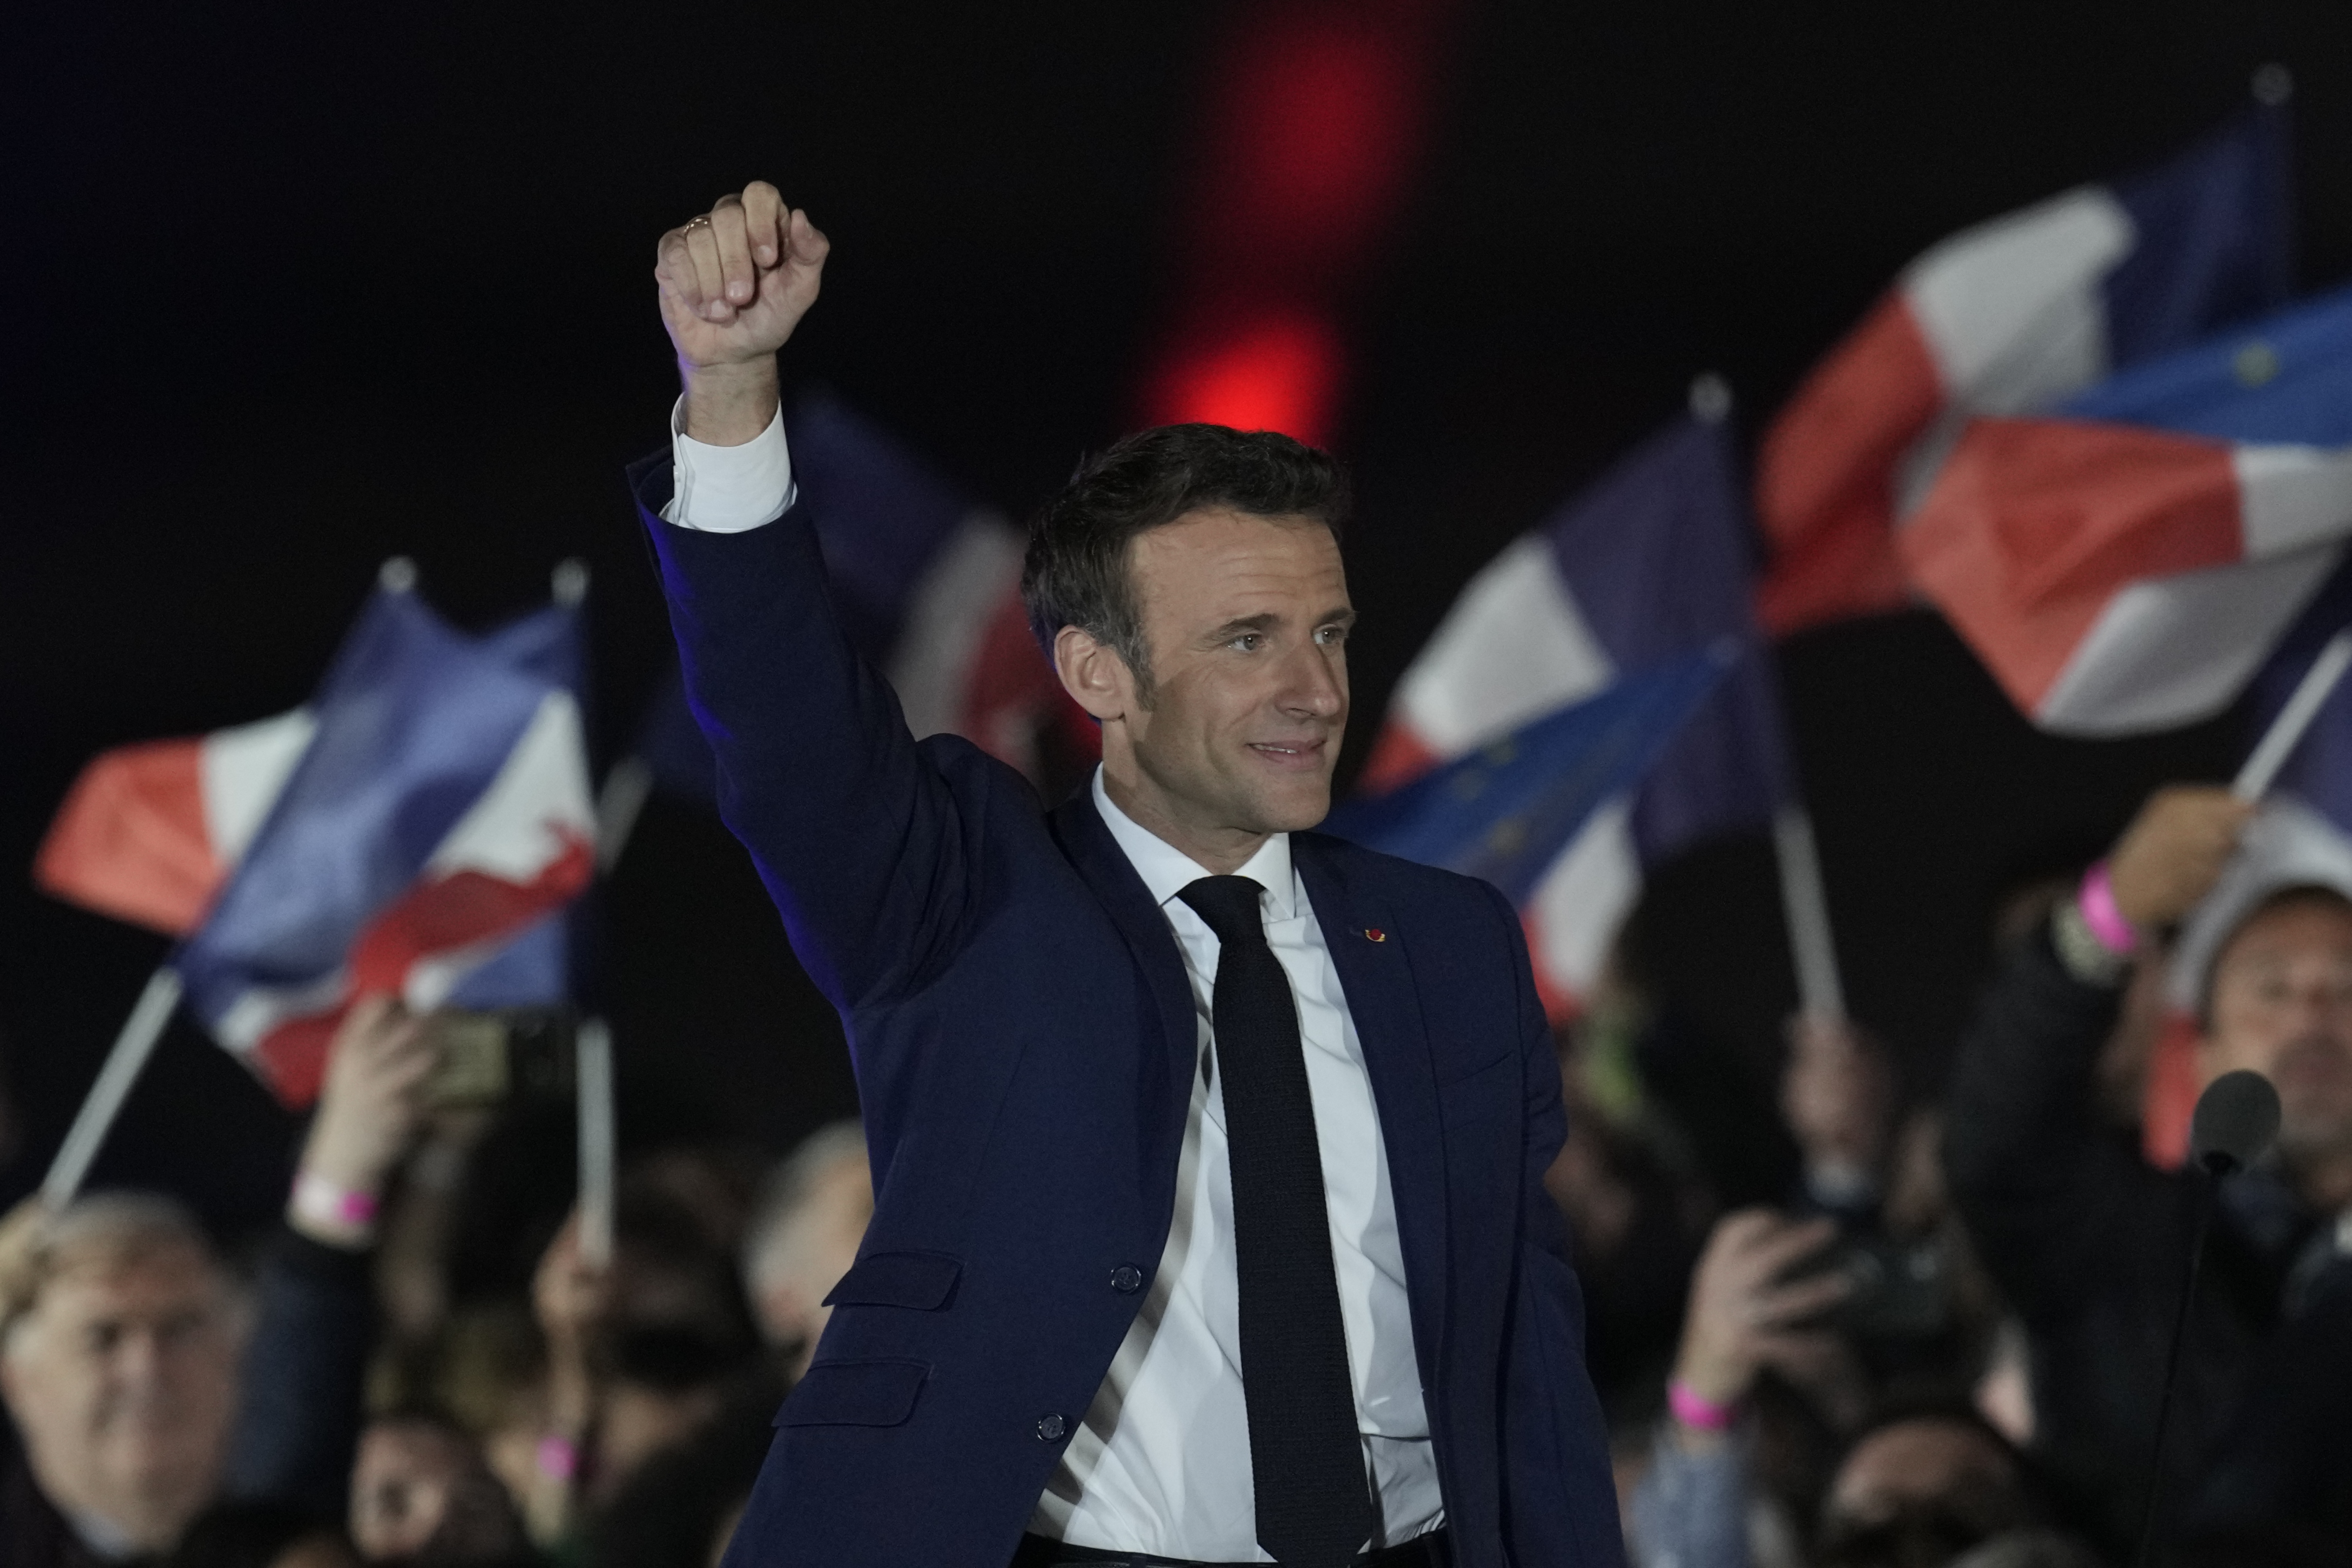 Франция мировая экономика. Эммануэль Макрон 2022. Эммануэль Макрон выиграл президентские выборы во Франции 2022.